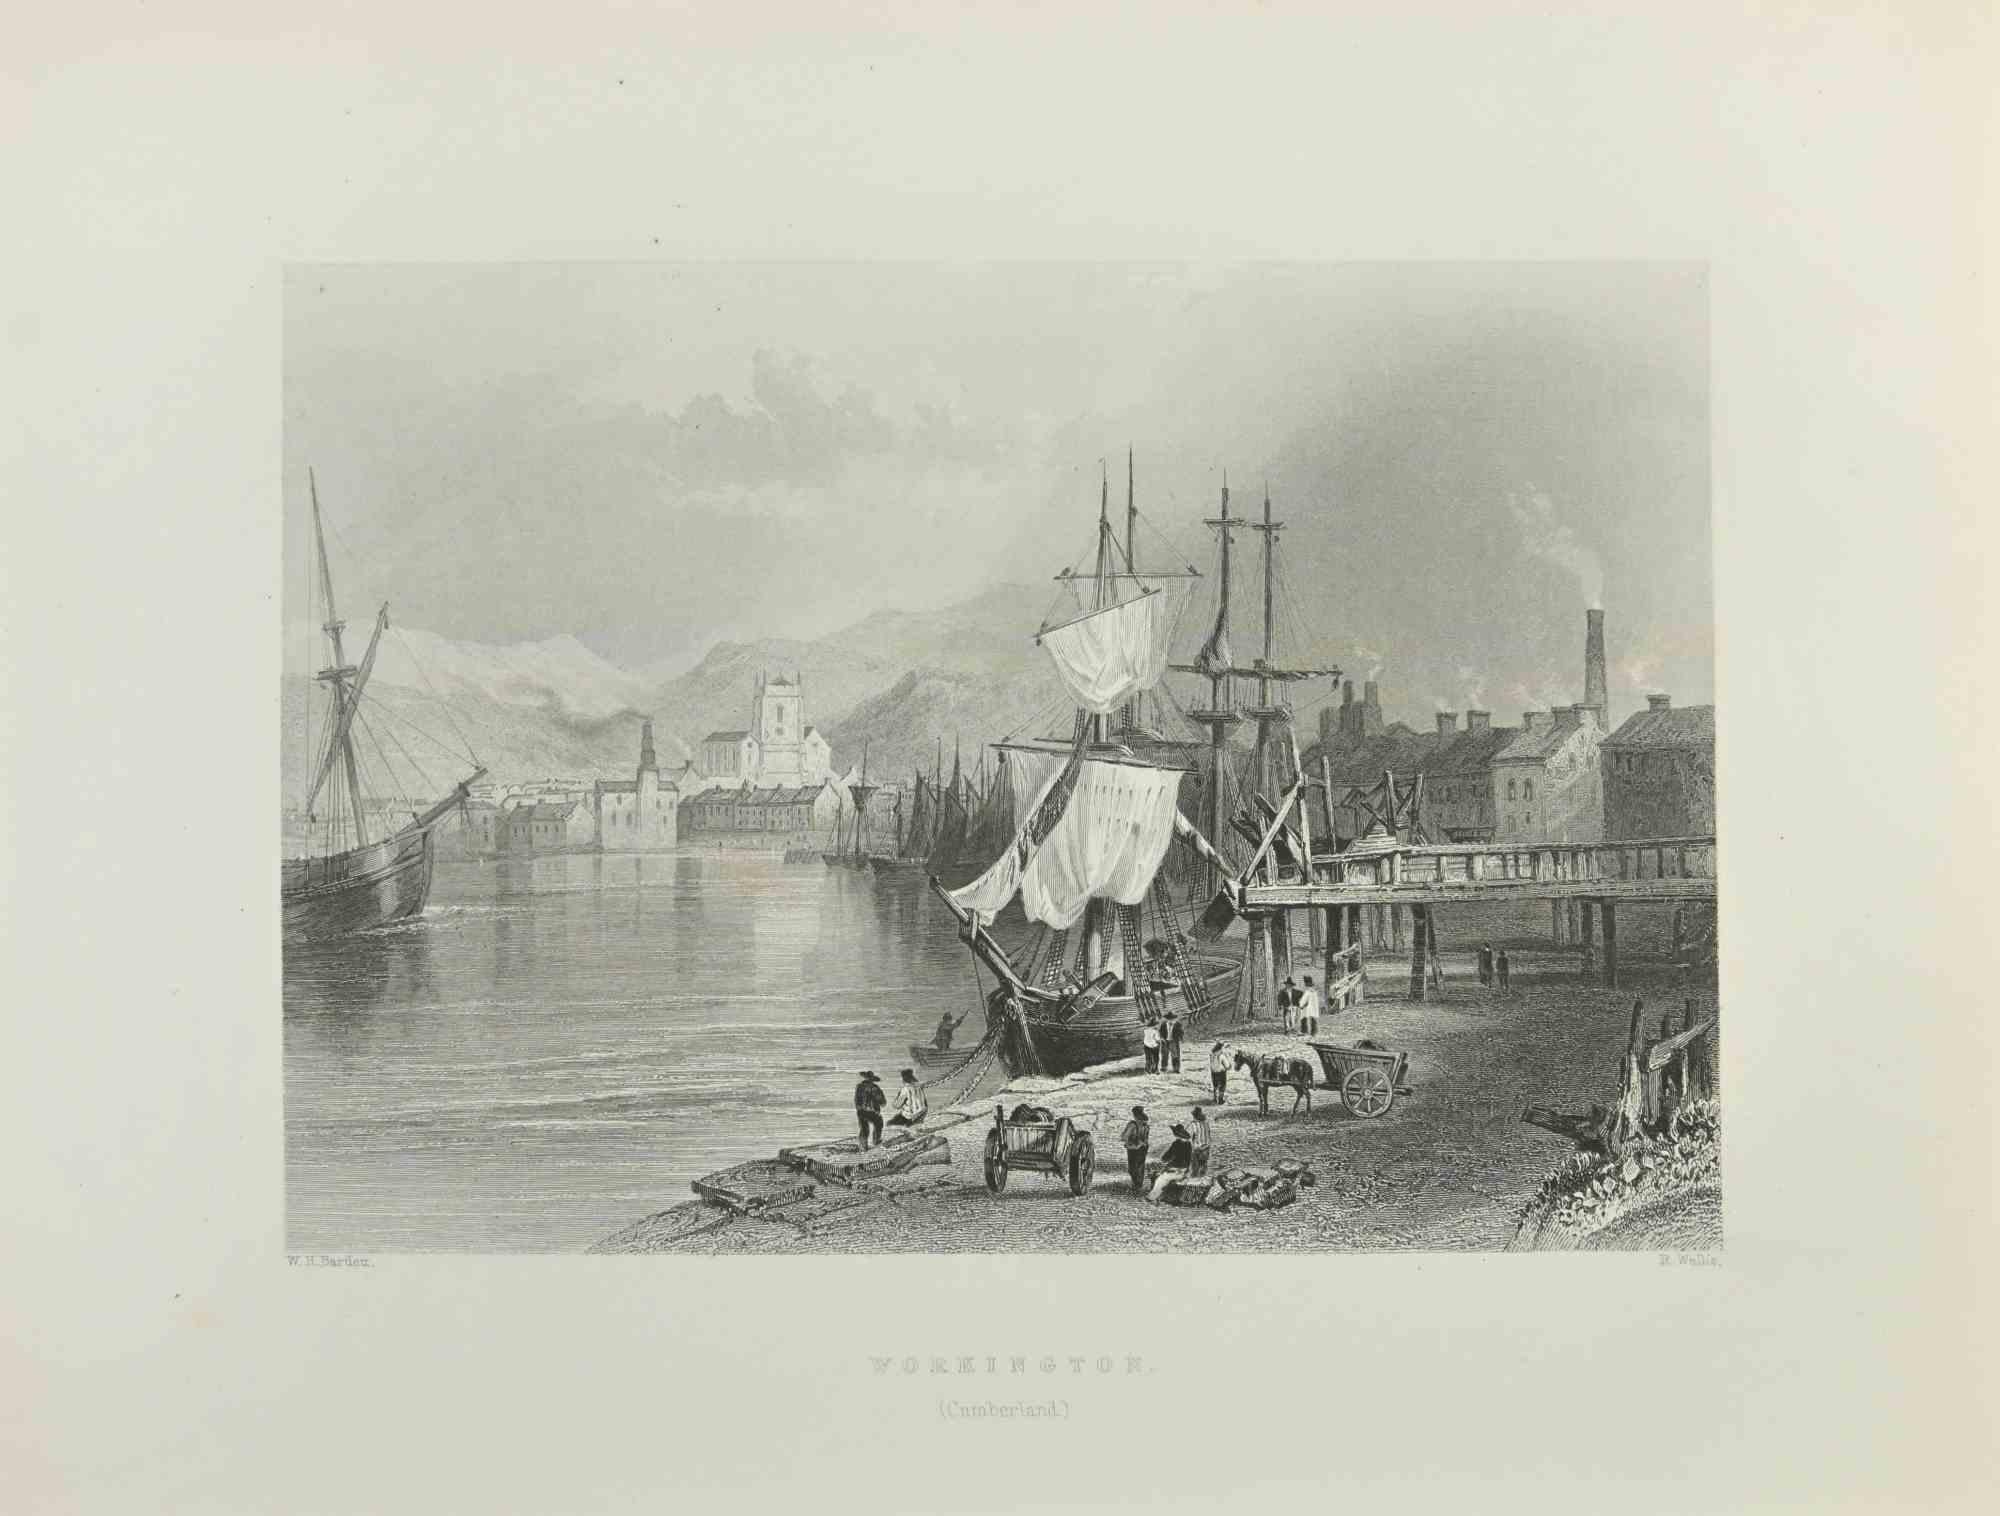 Workington – Radierung von W.H. Bartlett – 1845